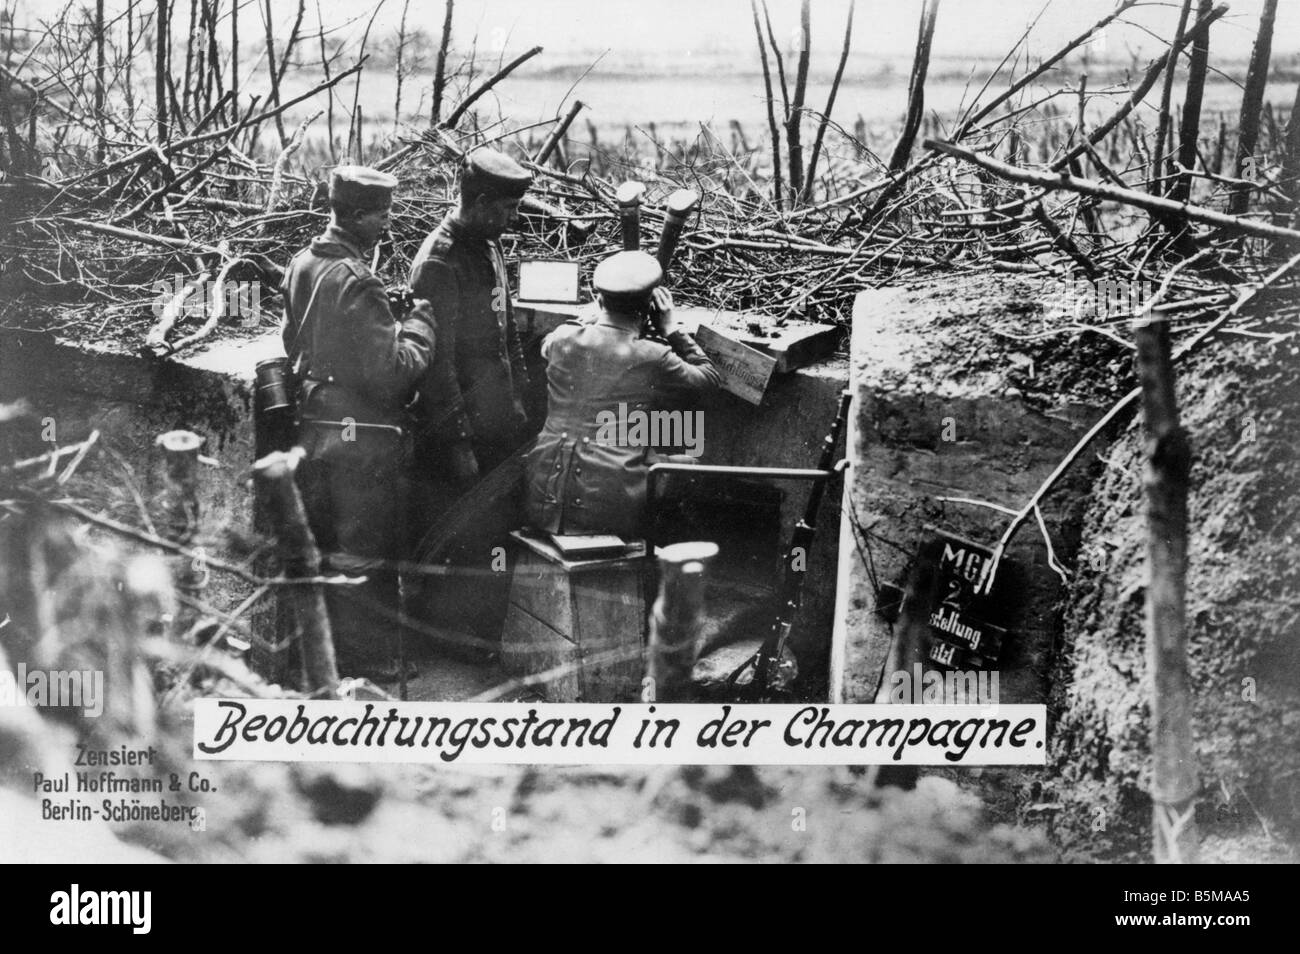 2 G55 W1 1915 16 fronte occidentale tedesco osservazione post storia WWI fronte occidentale posto di osservazione delle truppe tedesche in Champa Foto Stock